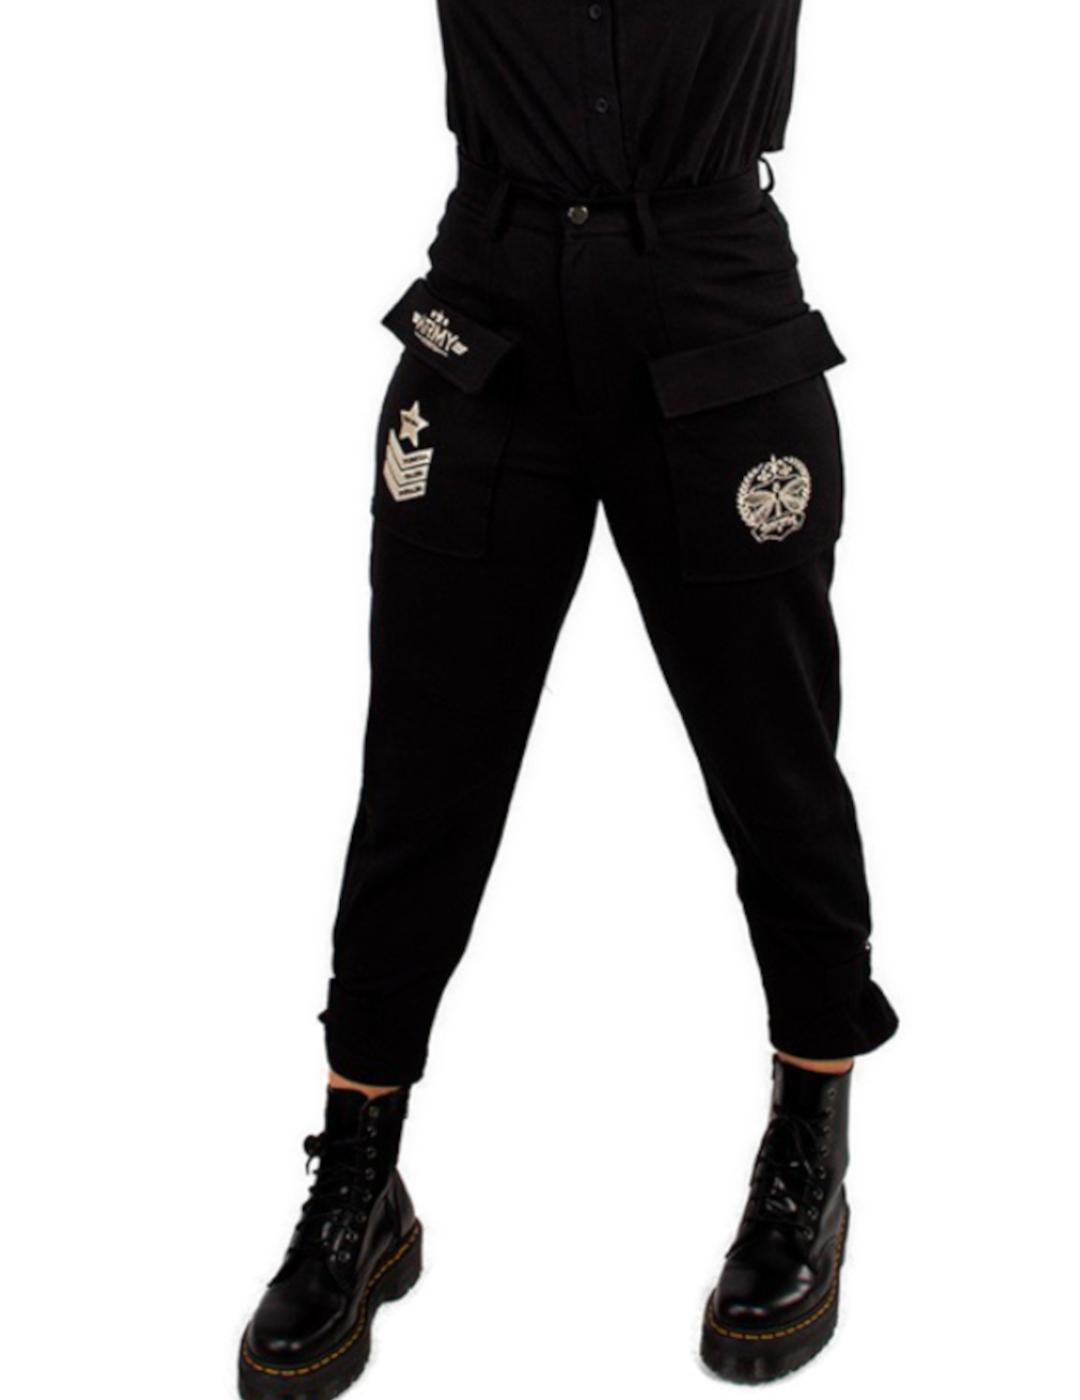 Pantalón Animosa negro Army para mujer-z